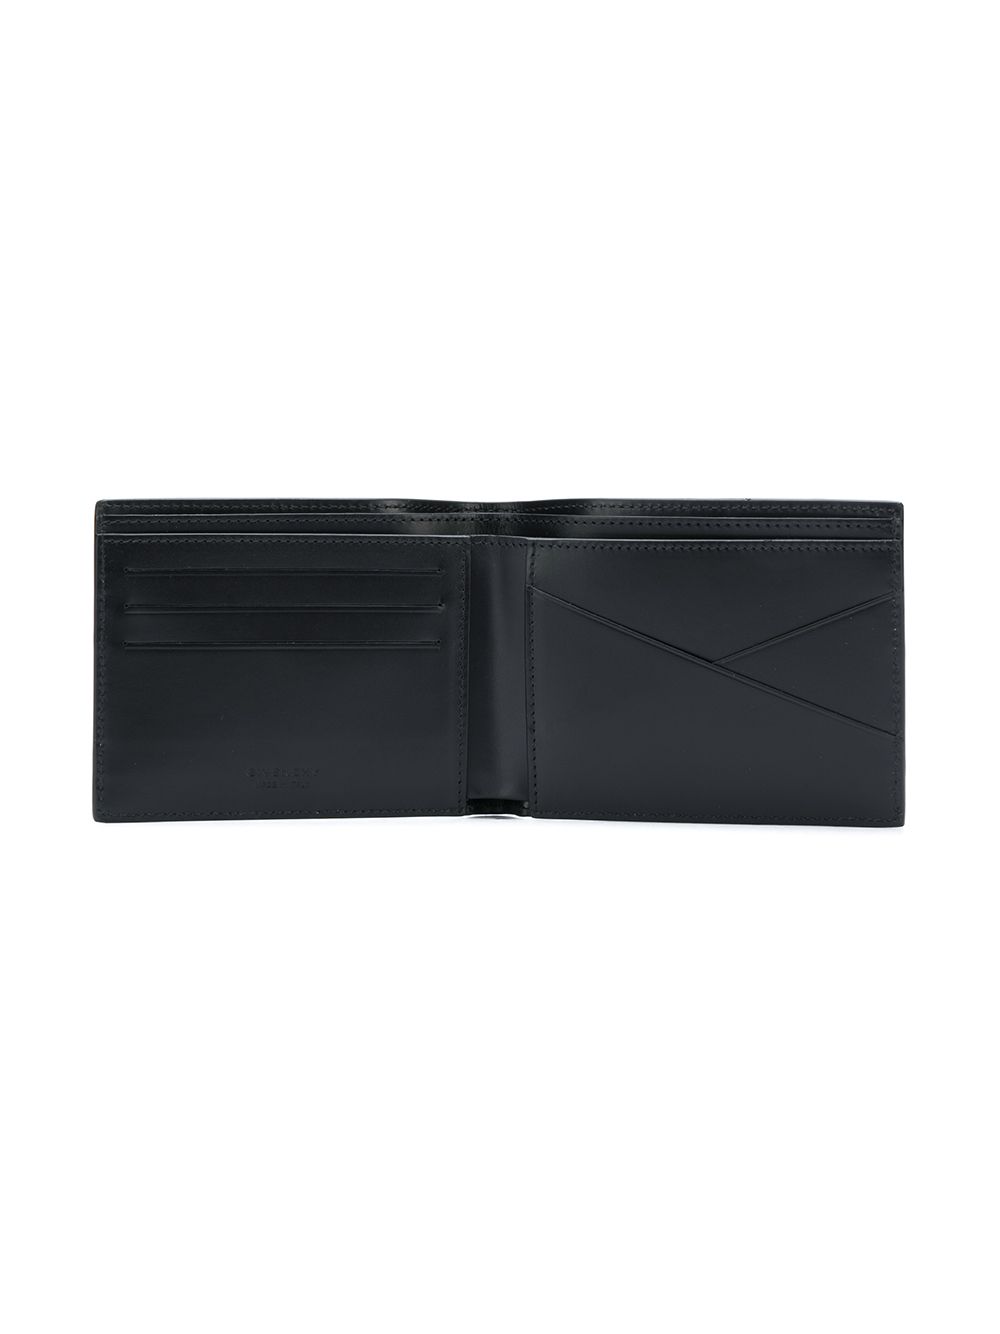 фото Givenchy кошелек с контрастным логотипом